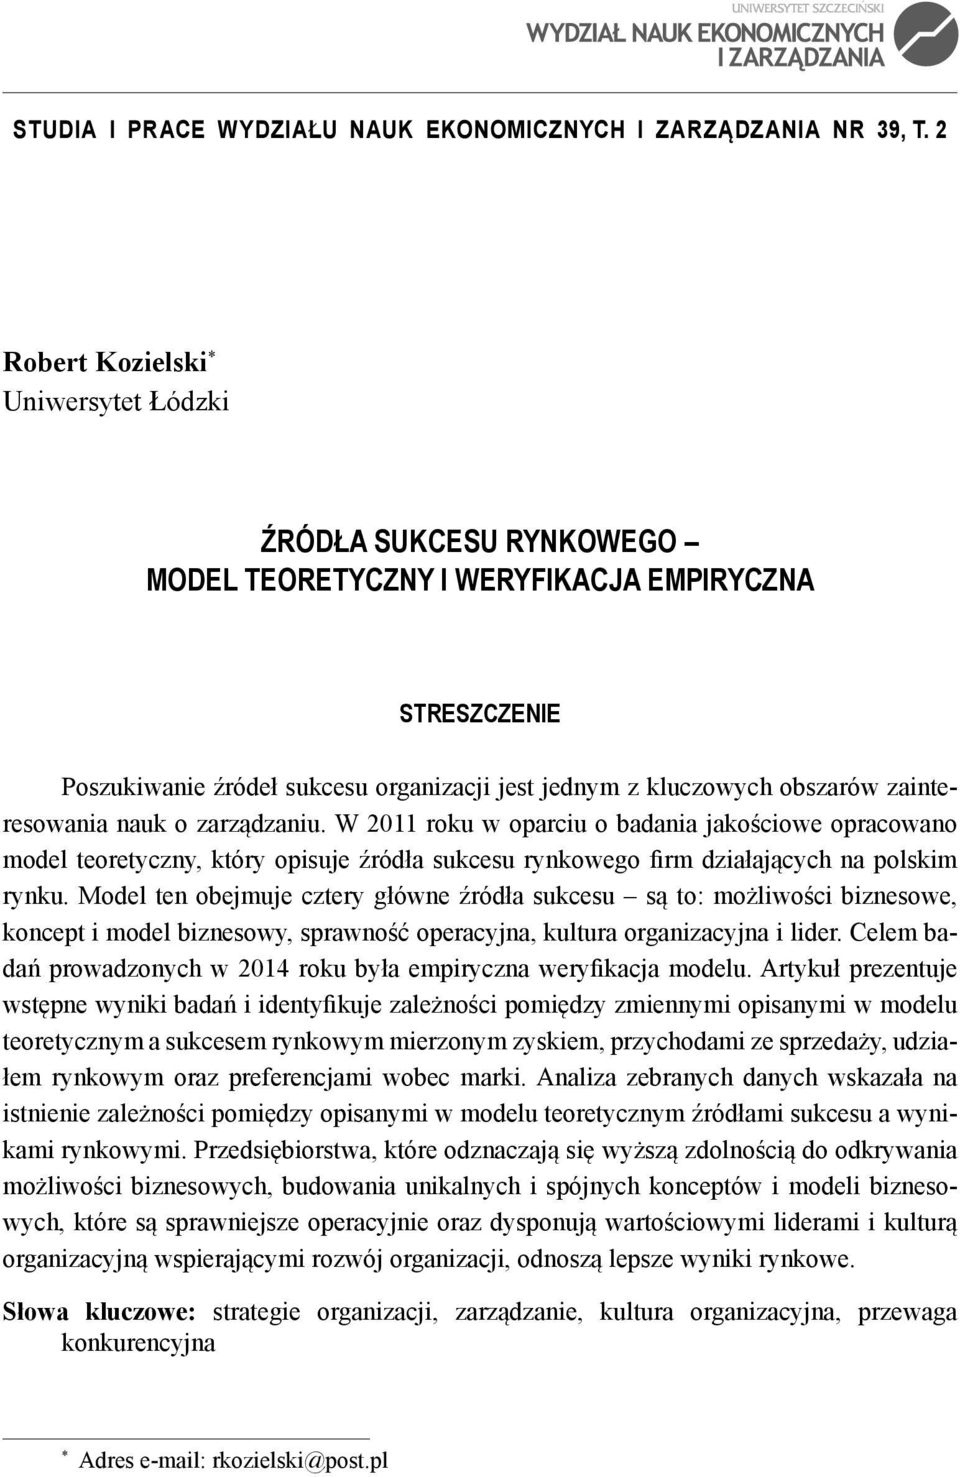 zainteresowania nauk o zarządzaniu. W 2011 roku w oparciu o badania jakościowe opracowano model teoretyczny, który opisuje źródła sukcesu rynkowego firm działających na polskim rynku.